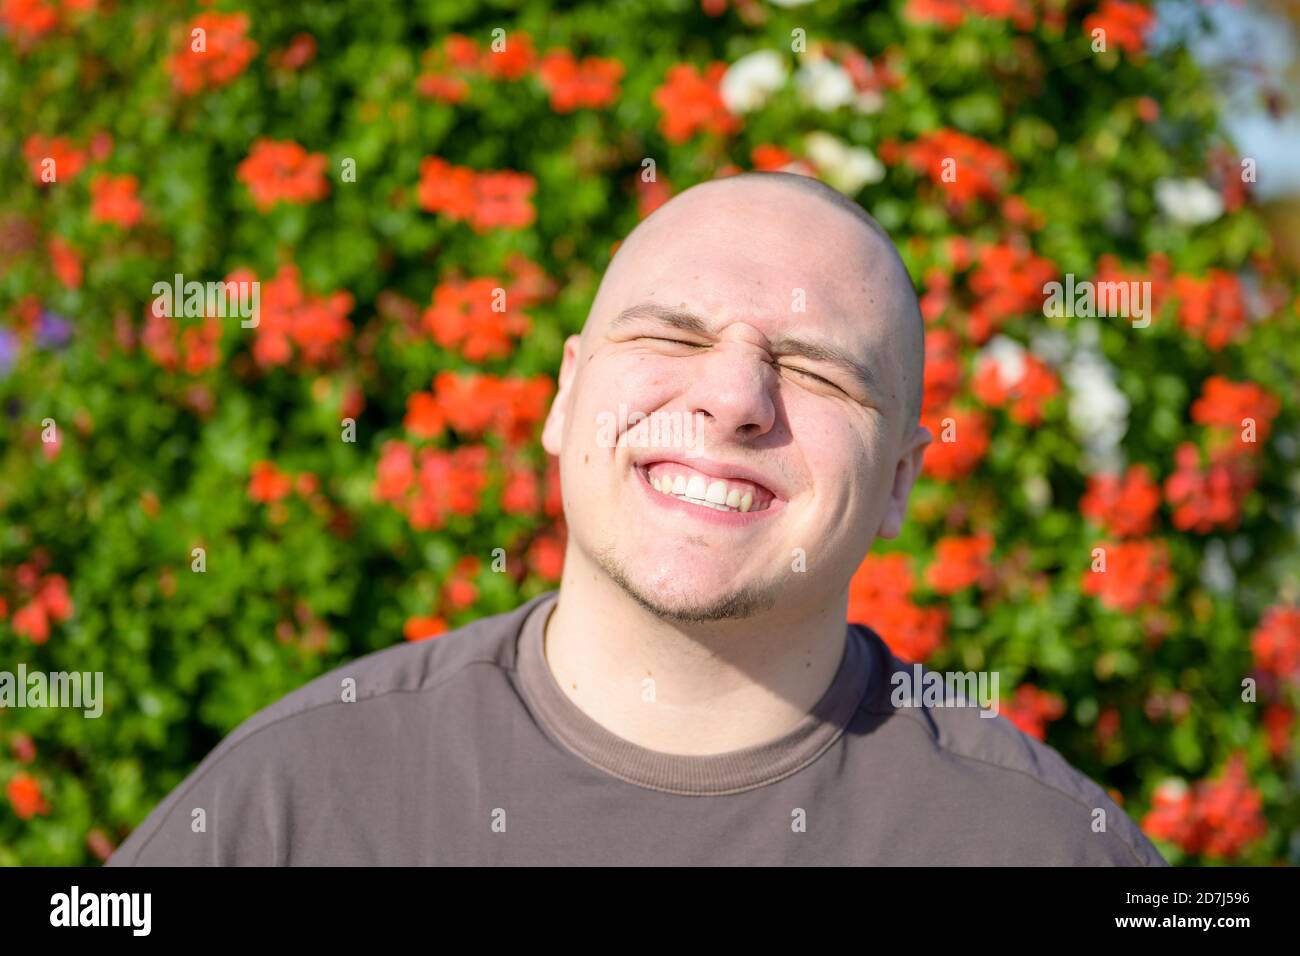 Aufsehenliches Porträt eines jungen Mannes, der die Augen zudreht Beim Lächeln im Freien in der Sonne vor einem Hintergrund von Bunte rote Blumen in der Garde Stockfoto